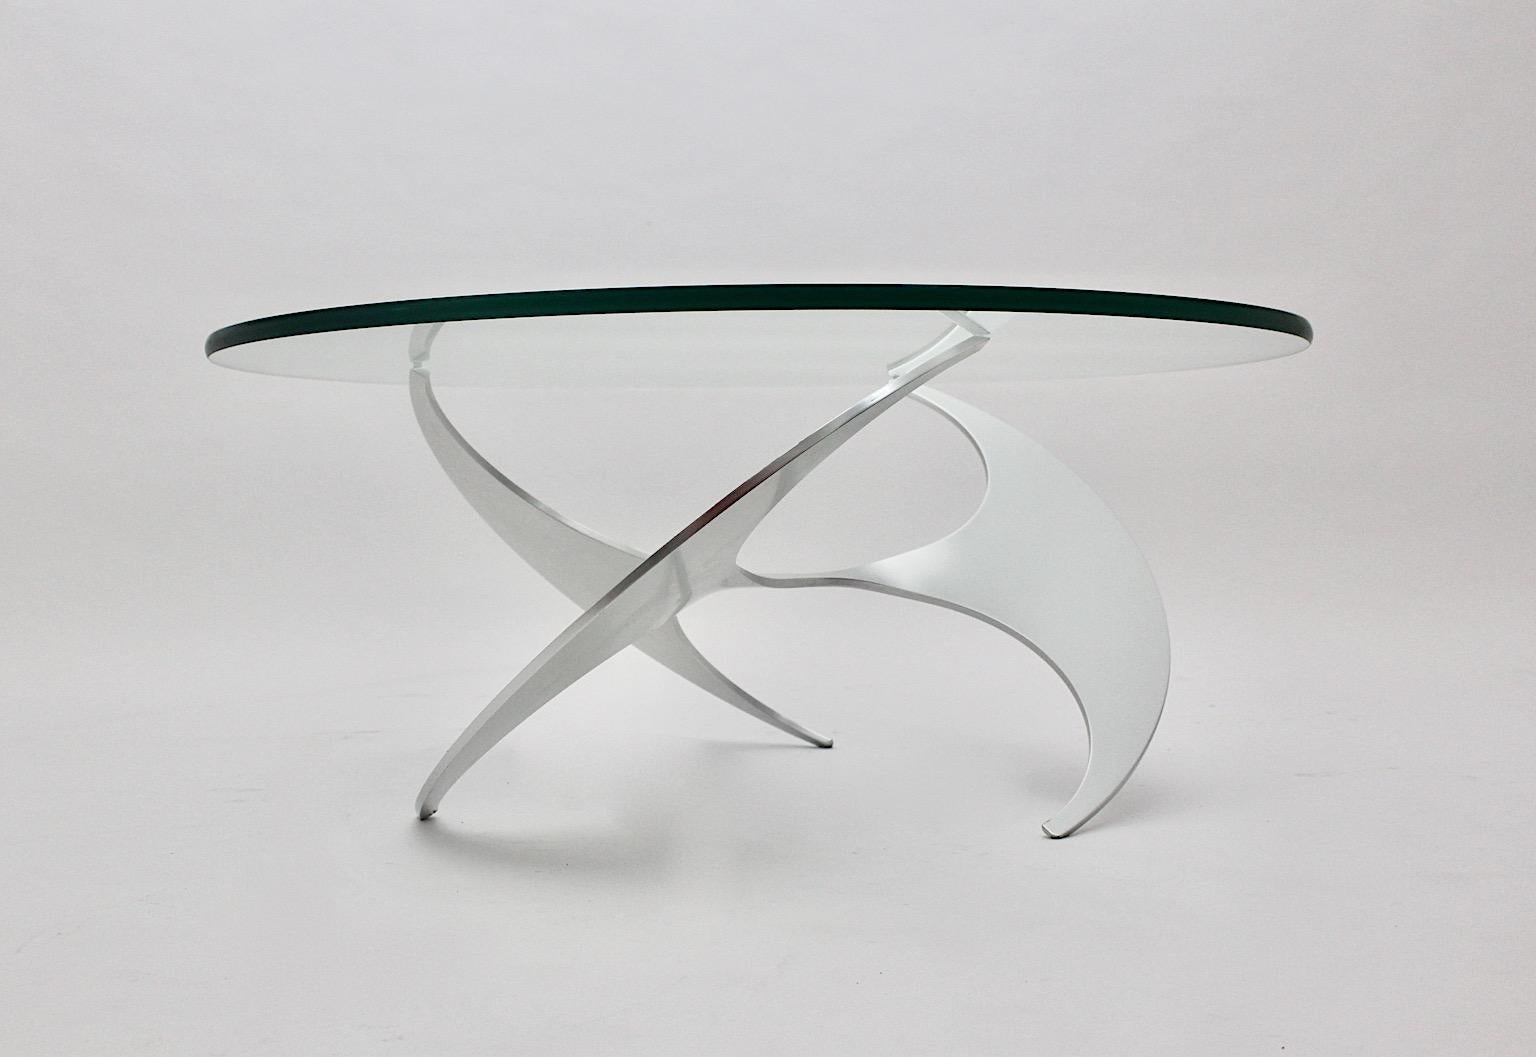 Table basse ou table de canapé en aluminium argenté de l'ère spatiale, conçue par Knut Hesterberg pour Ronald Schmitt, vers 1964, Allemagne.
Alors que la base en aluminium poli montre un grand mouvement de torsion comme une vis sans fin, le plateau